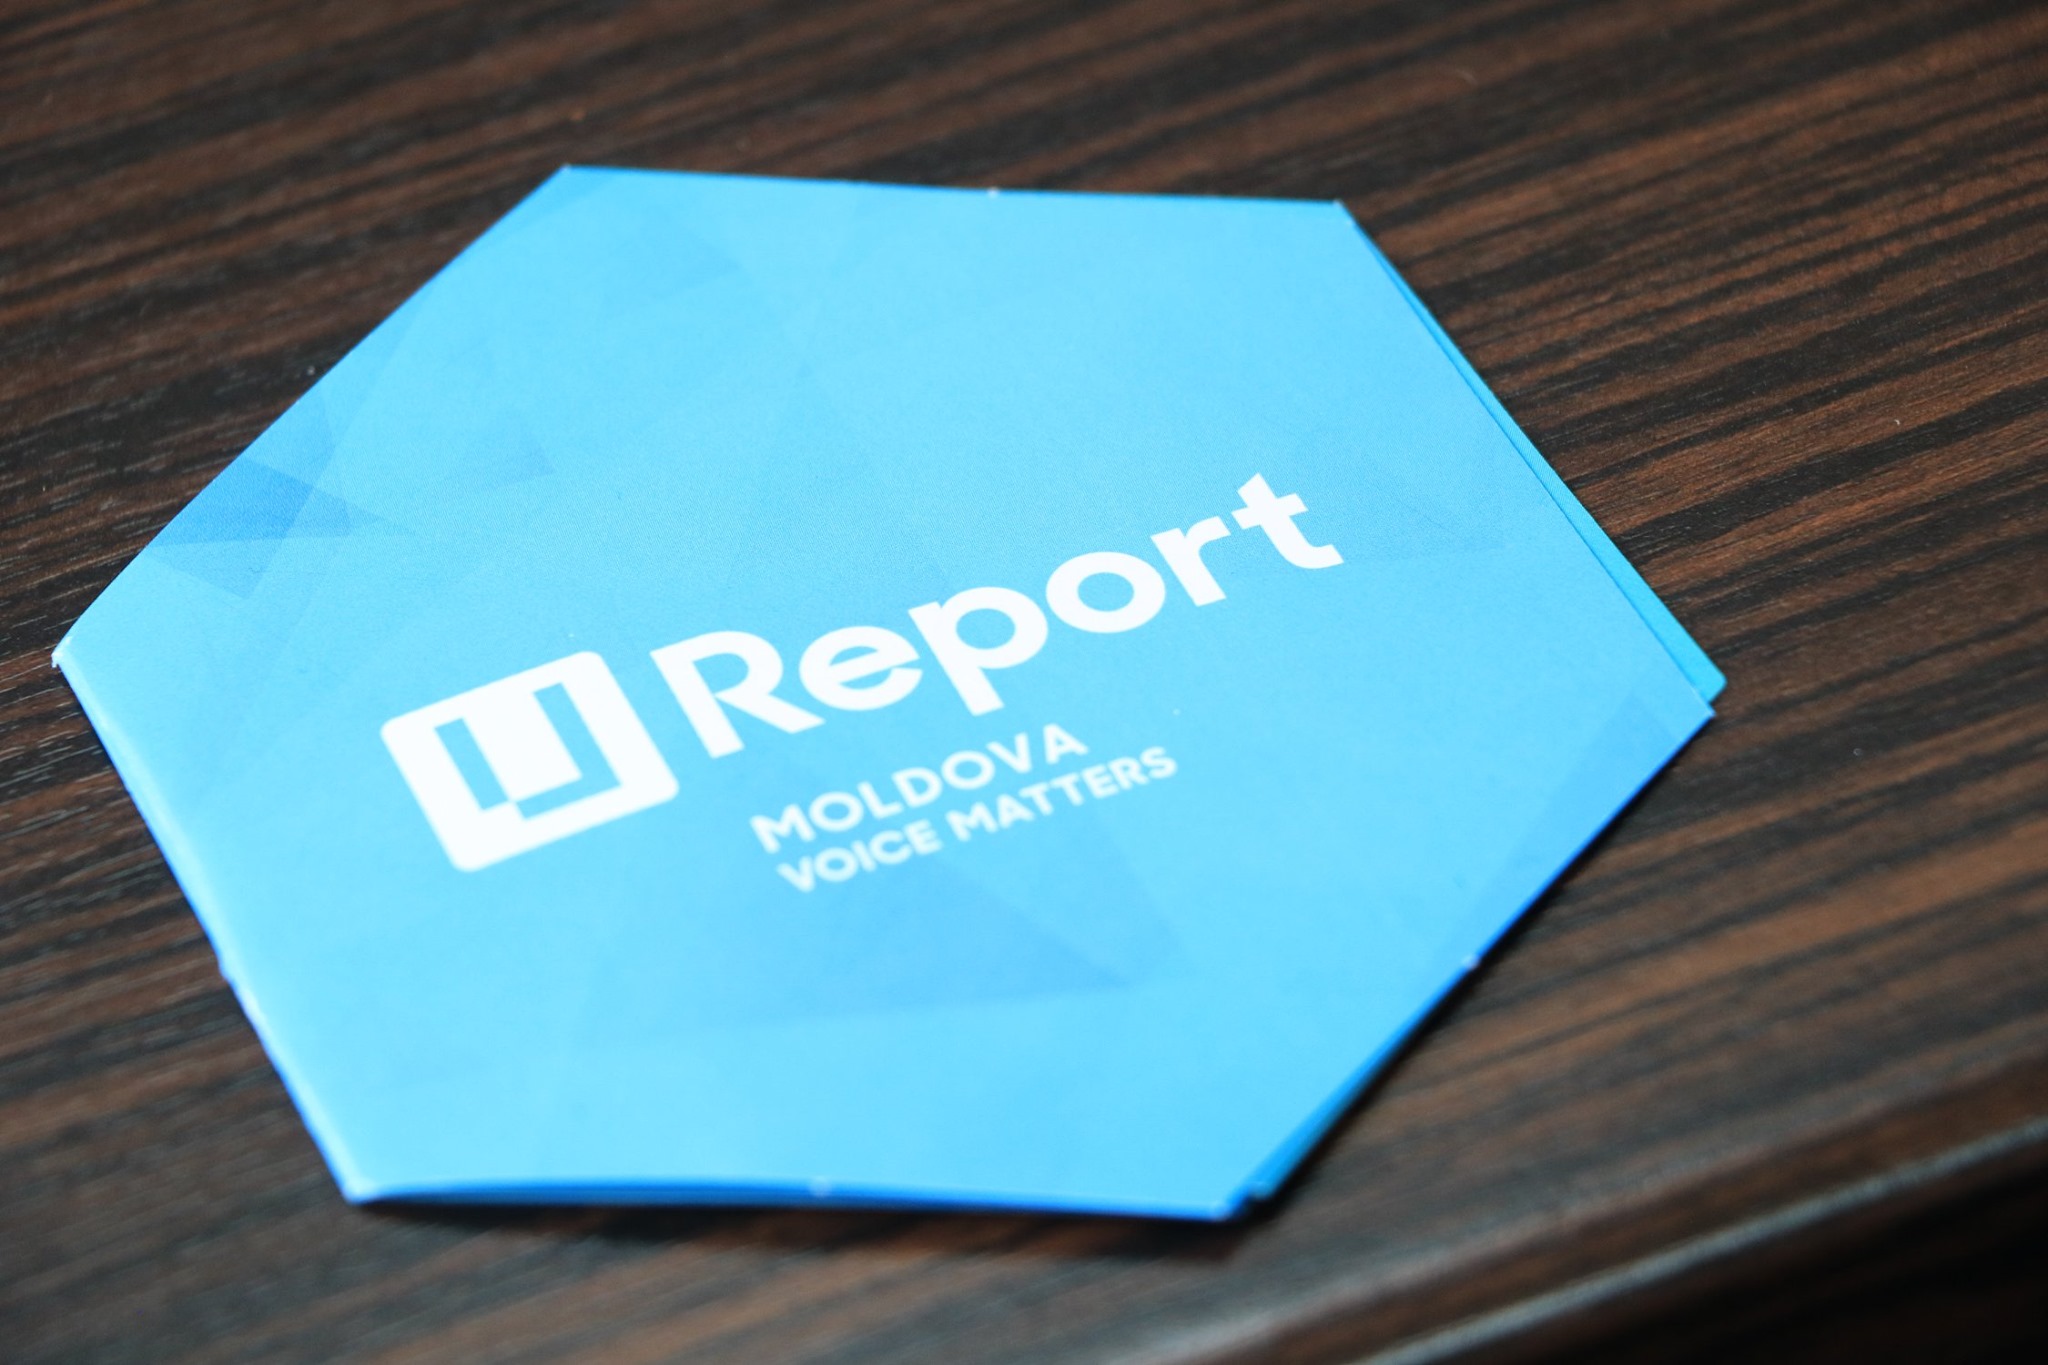 U-Report Moldova